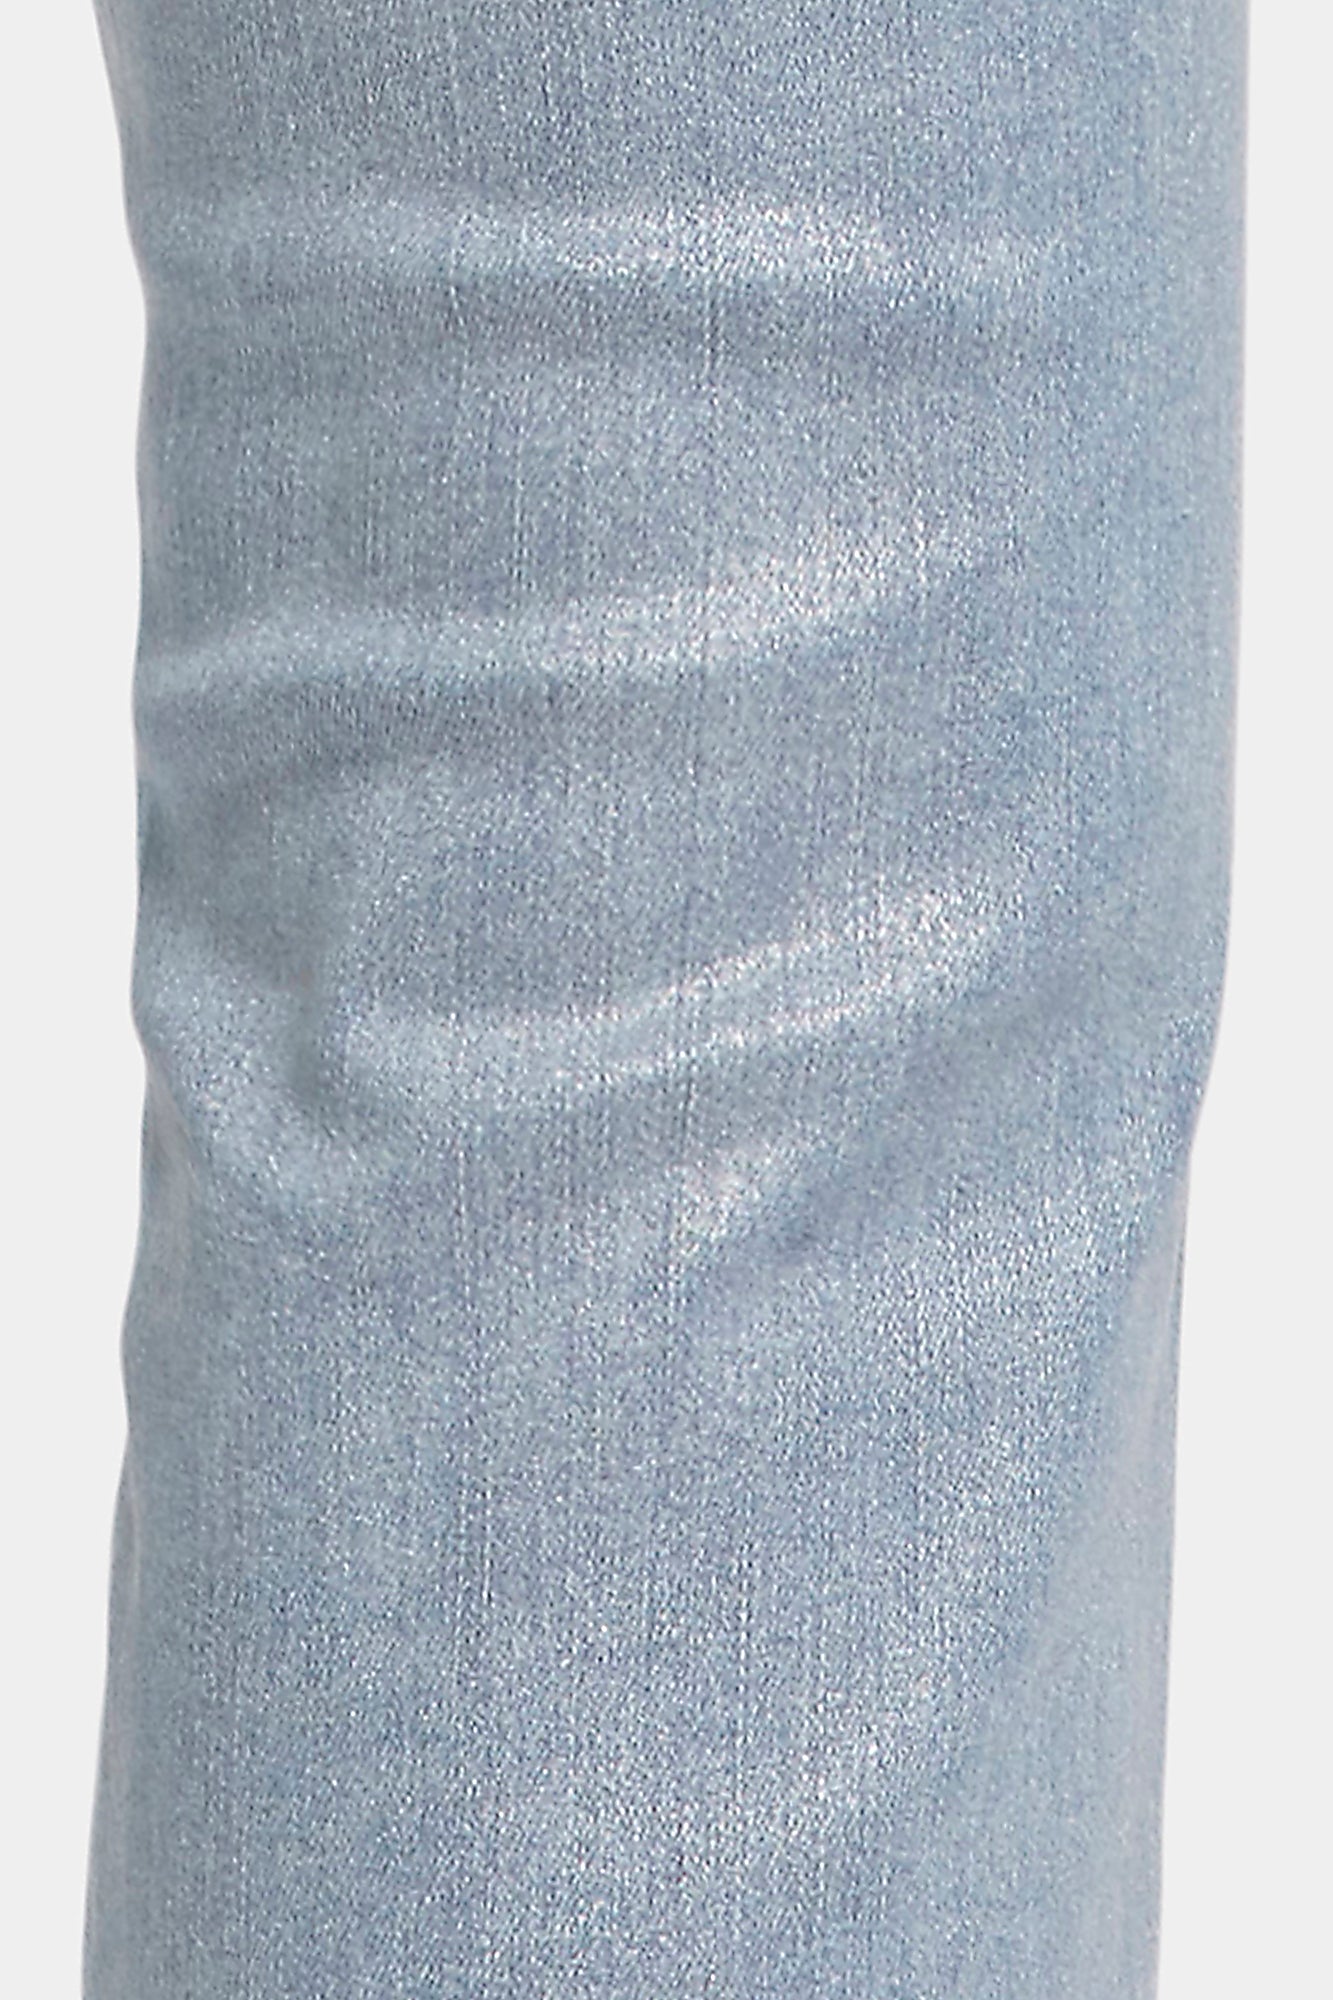 NYDJ Sheri Slim Jeans With Silver Foil Coating - Sparkling Lights